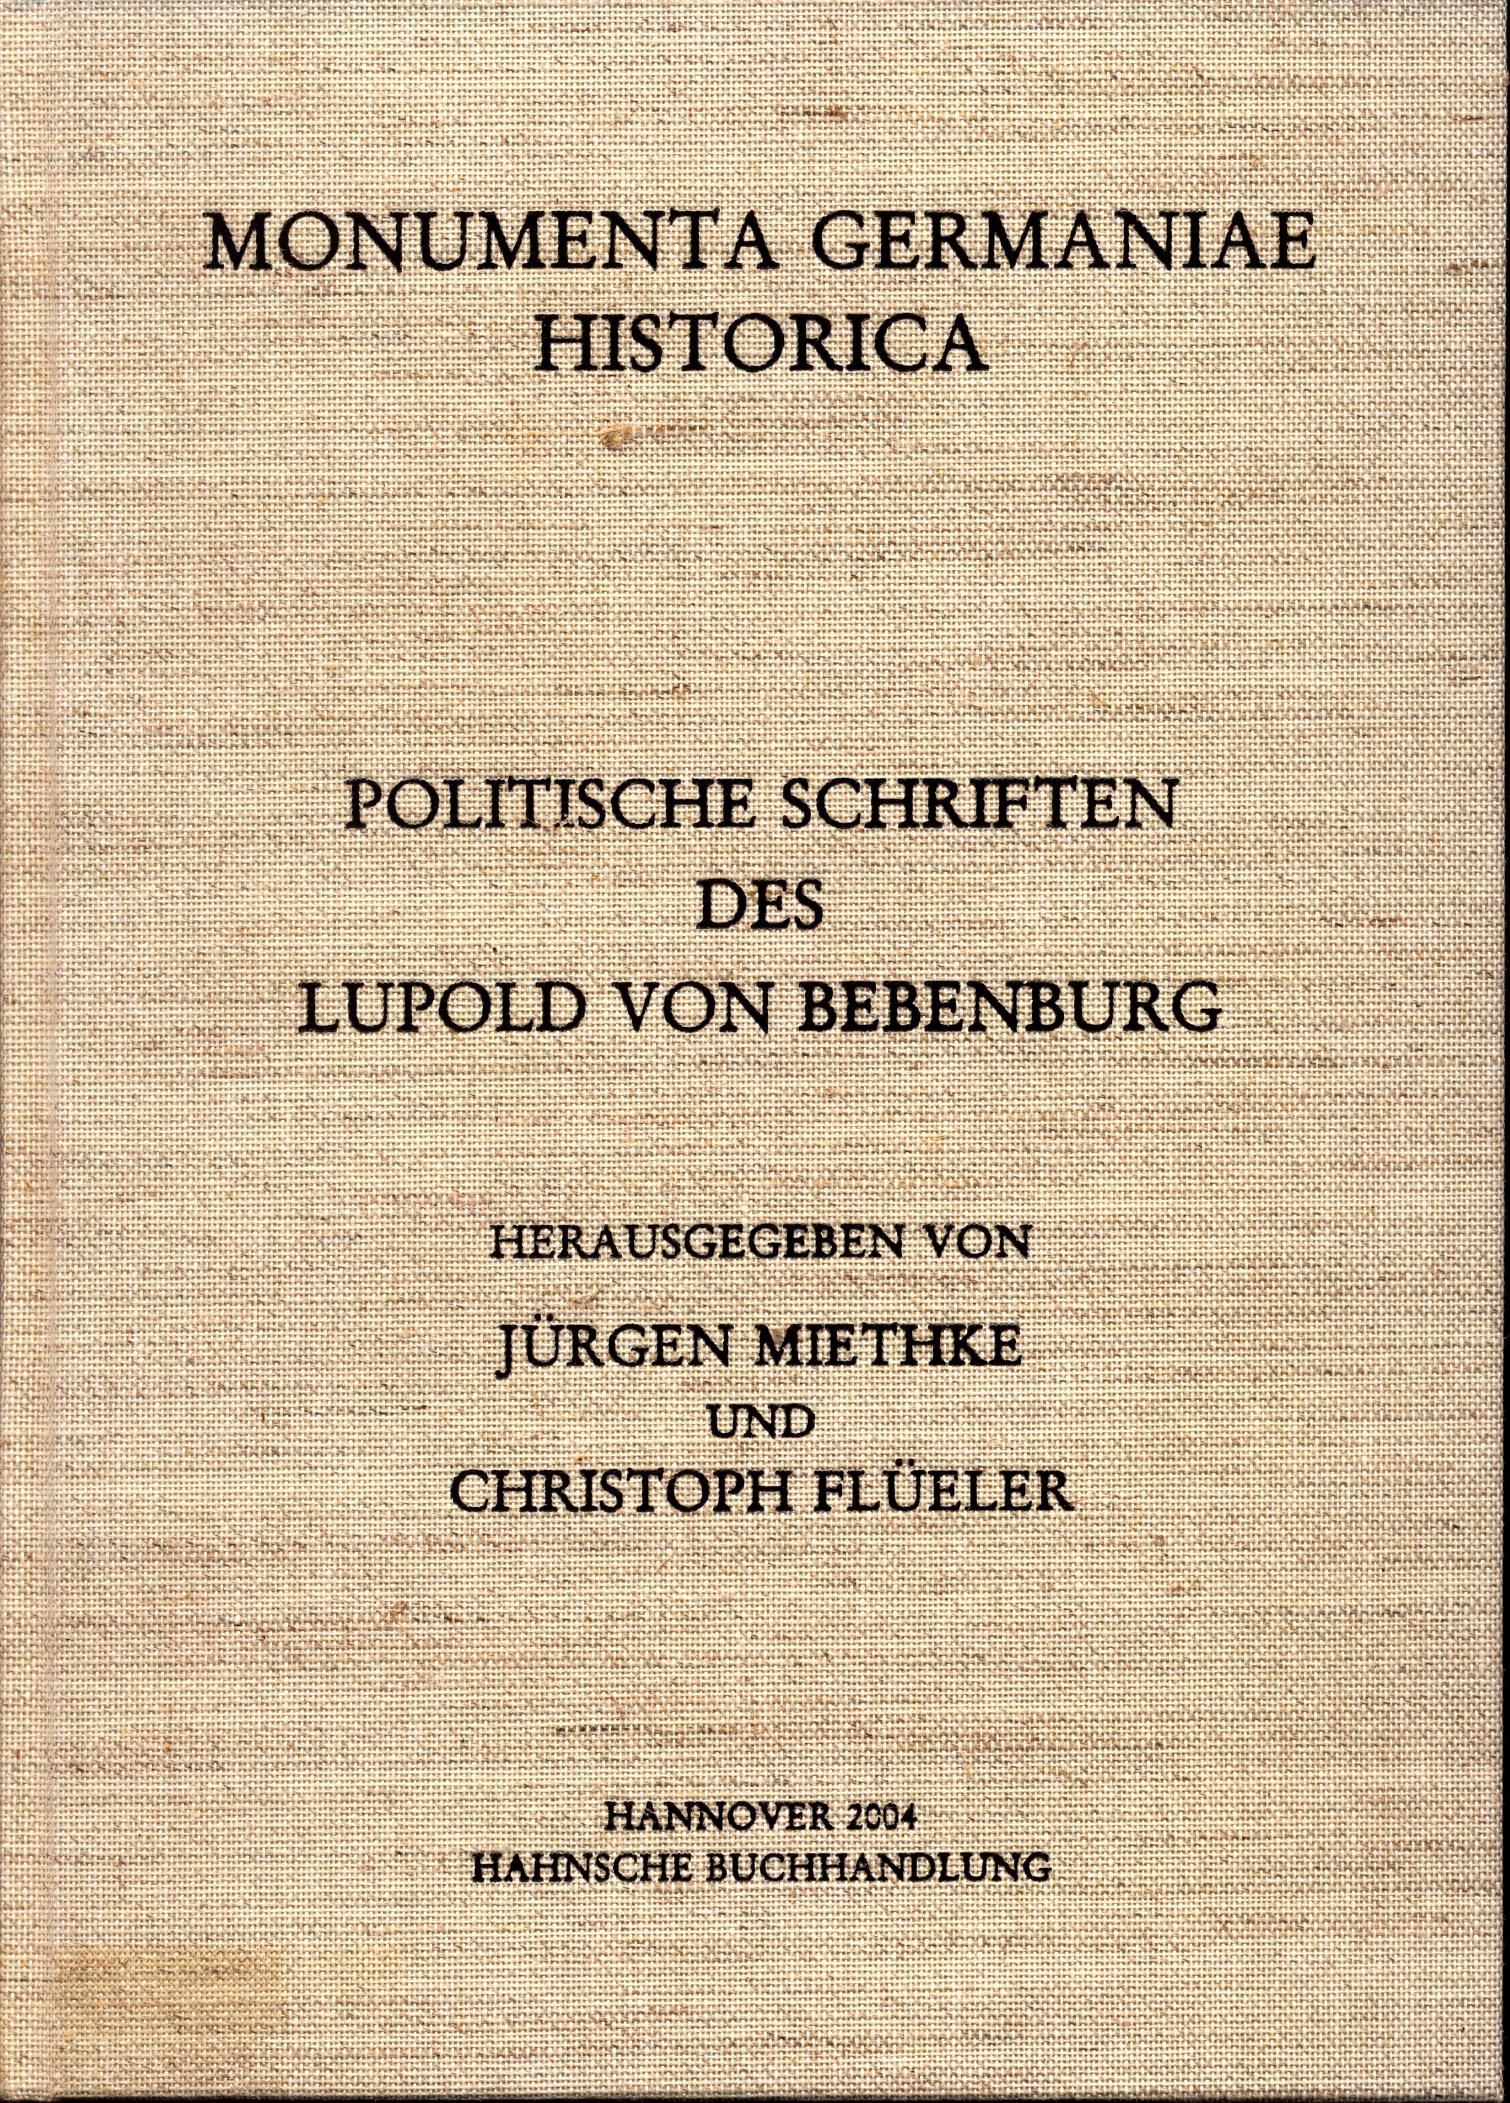 Politische Schriften des Lupold von Bebenburg Band 4 - Miethke, Jürgen und Christoph Flüeler